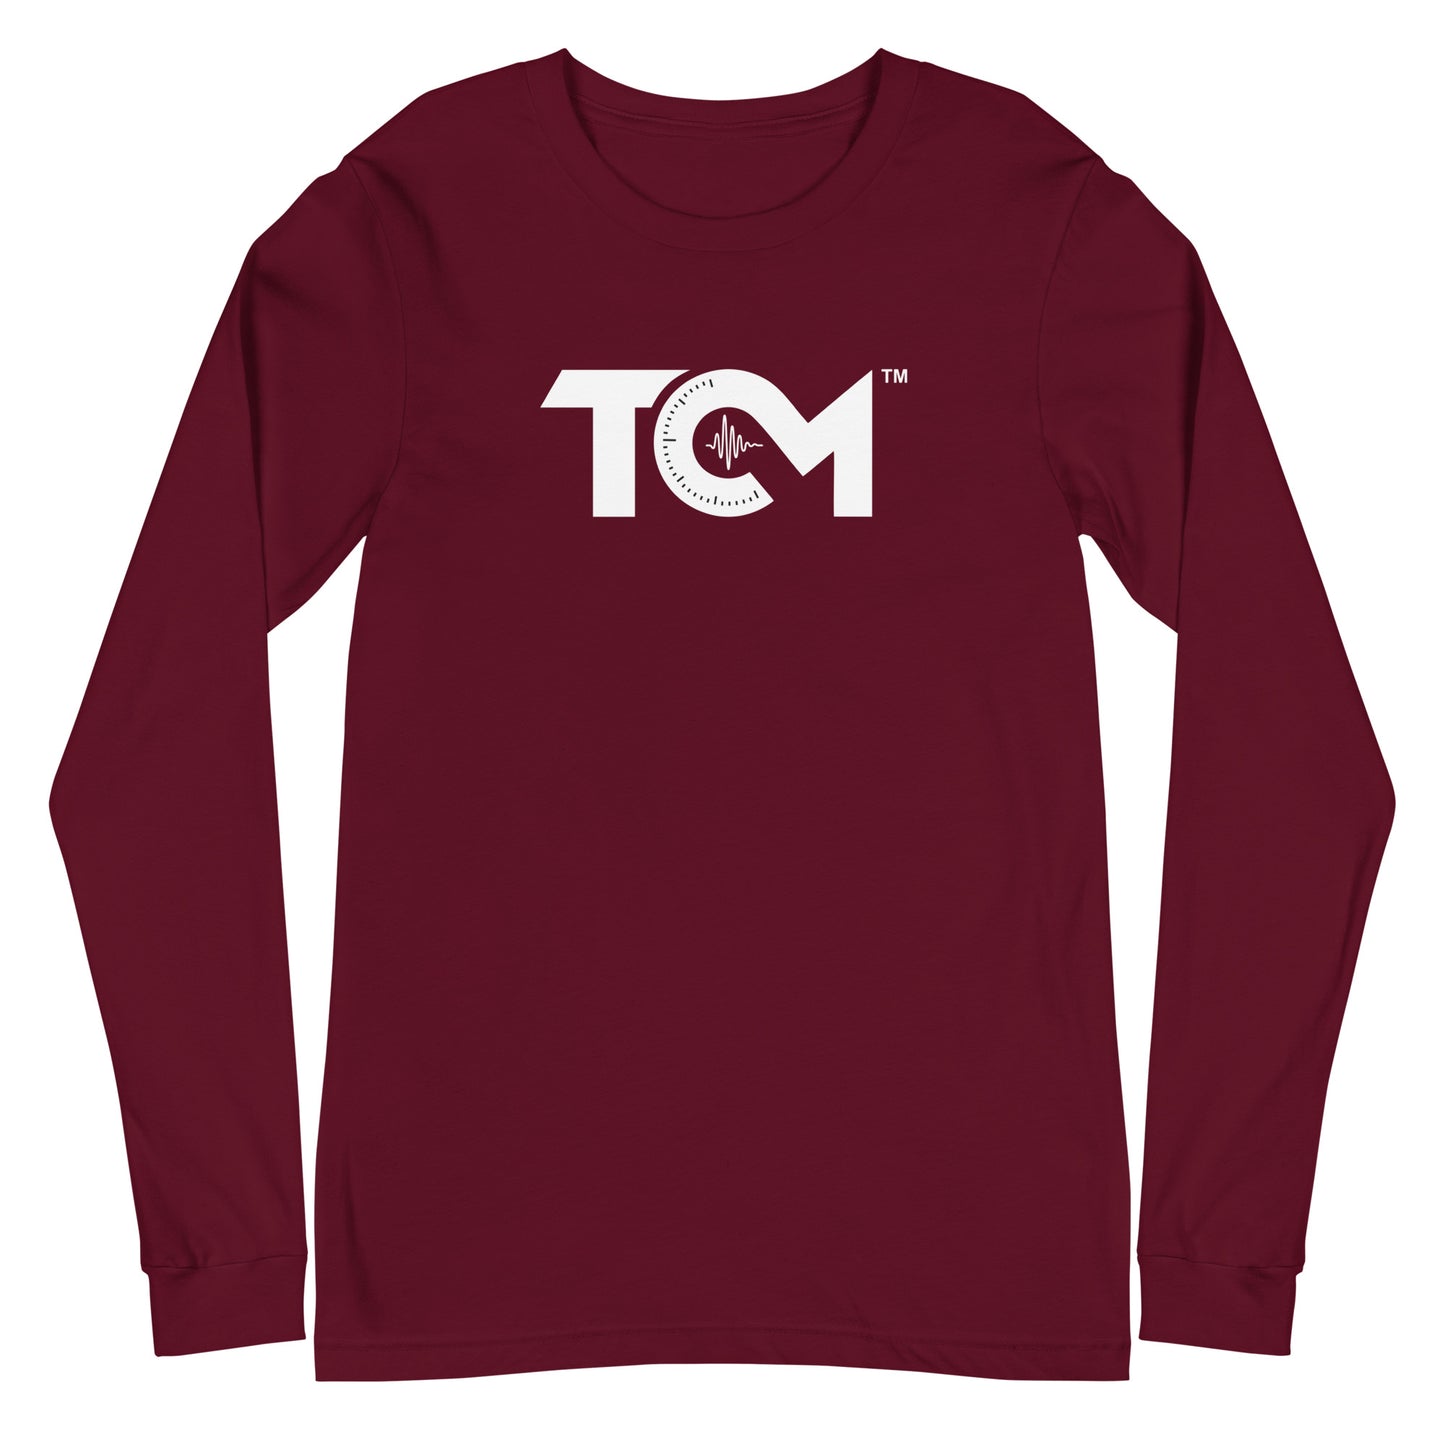 TCM unisex long sleeve shirt